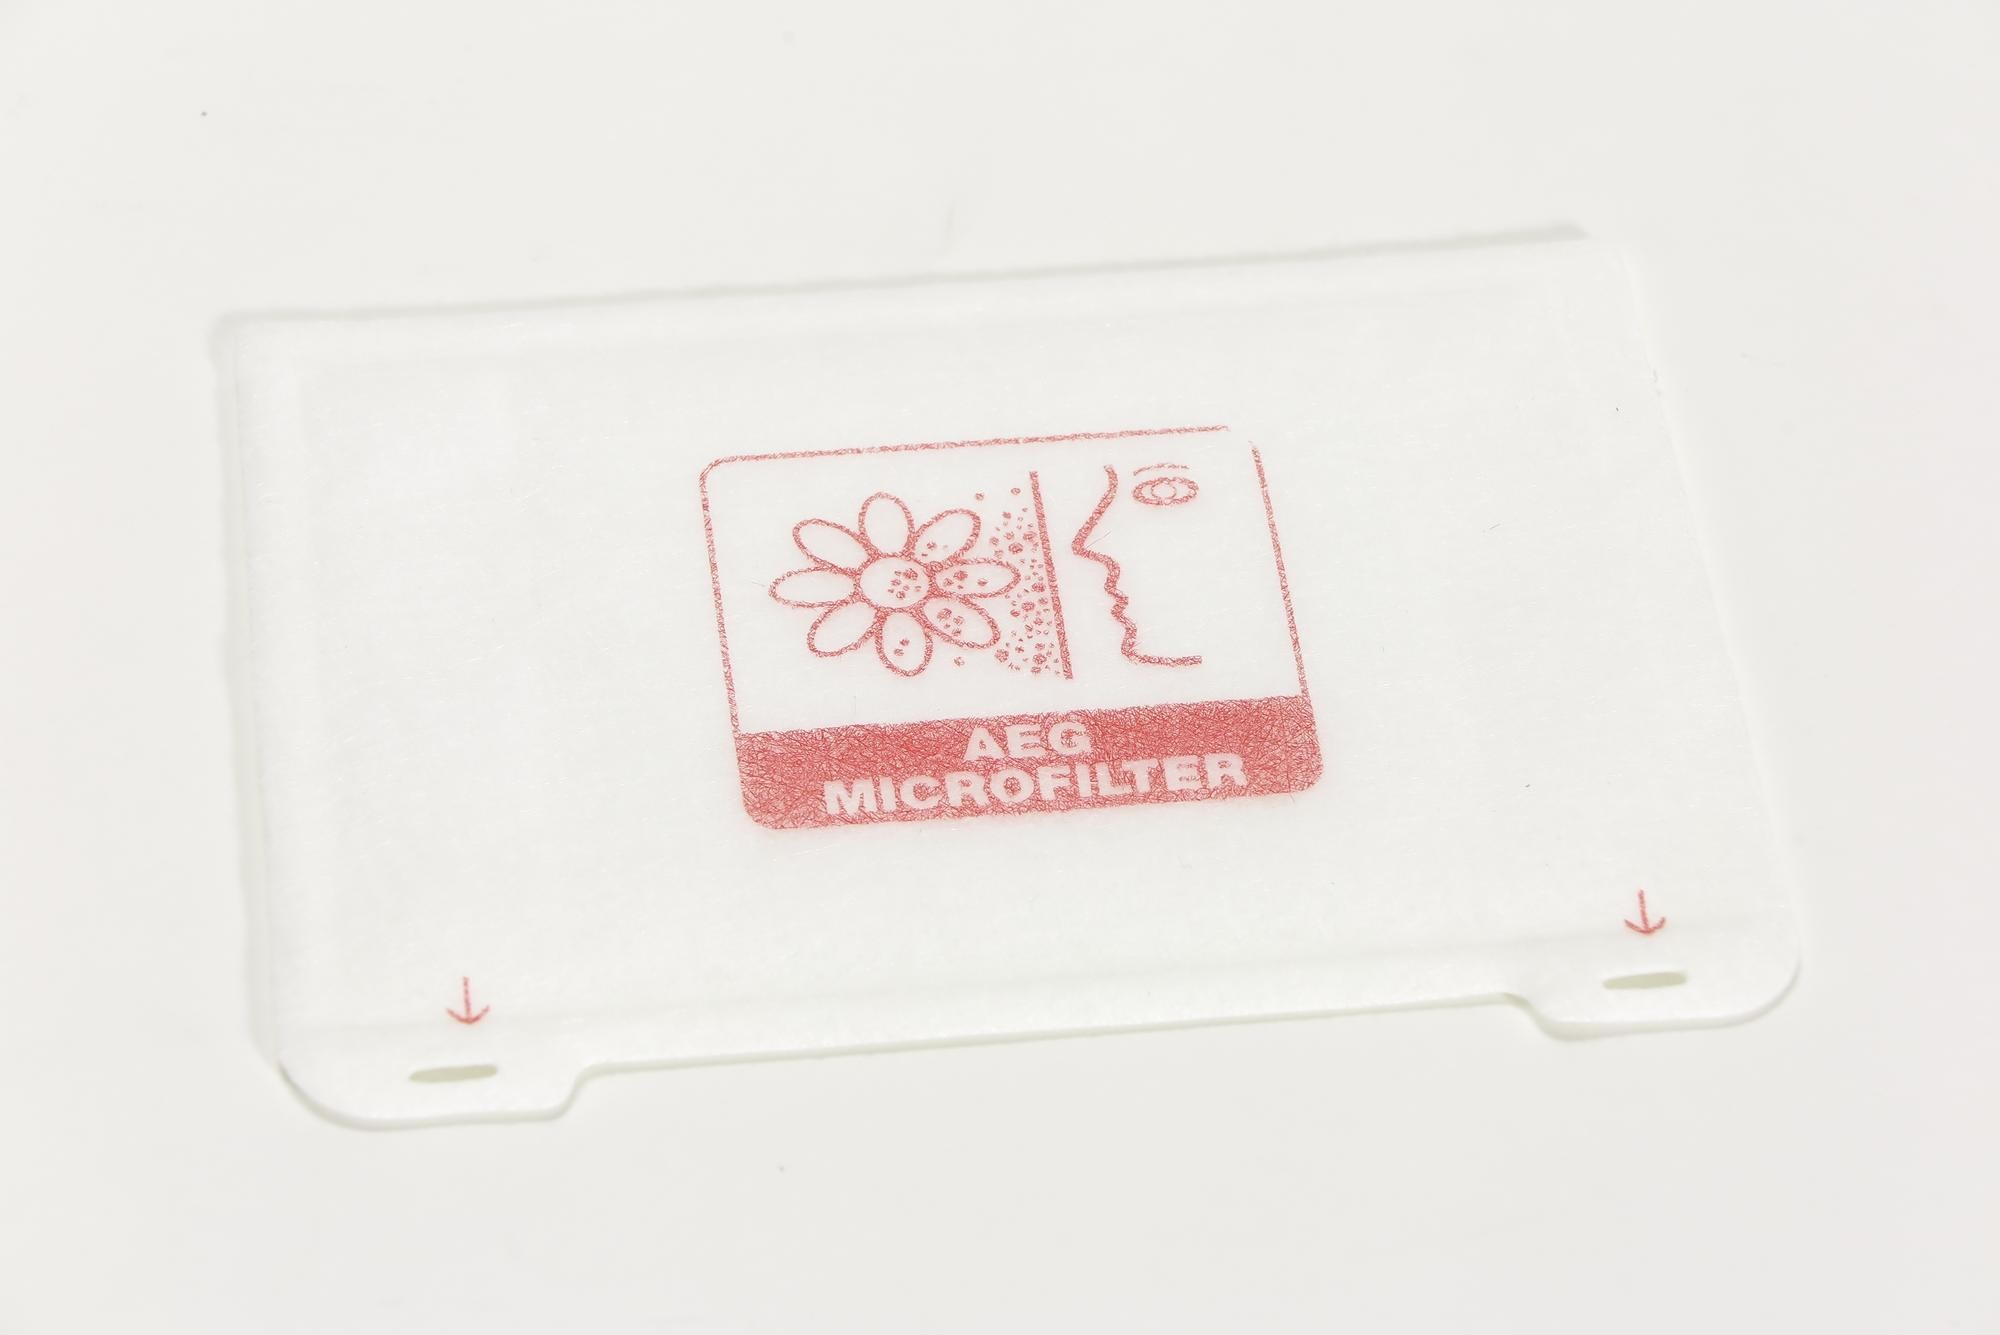 Microfilter "AEG MICROFILTER", Zubehör zu Bodenstaubsauger AEG Typ 60 ACE 05 Modell Öko-Vampyr electronic (Stiftung Deutsches Technikmuseum Berlin CC0)